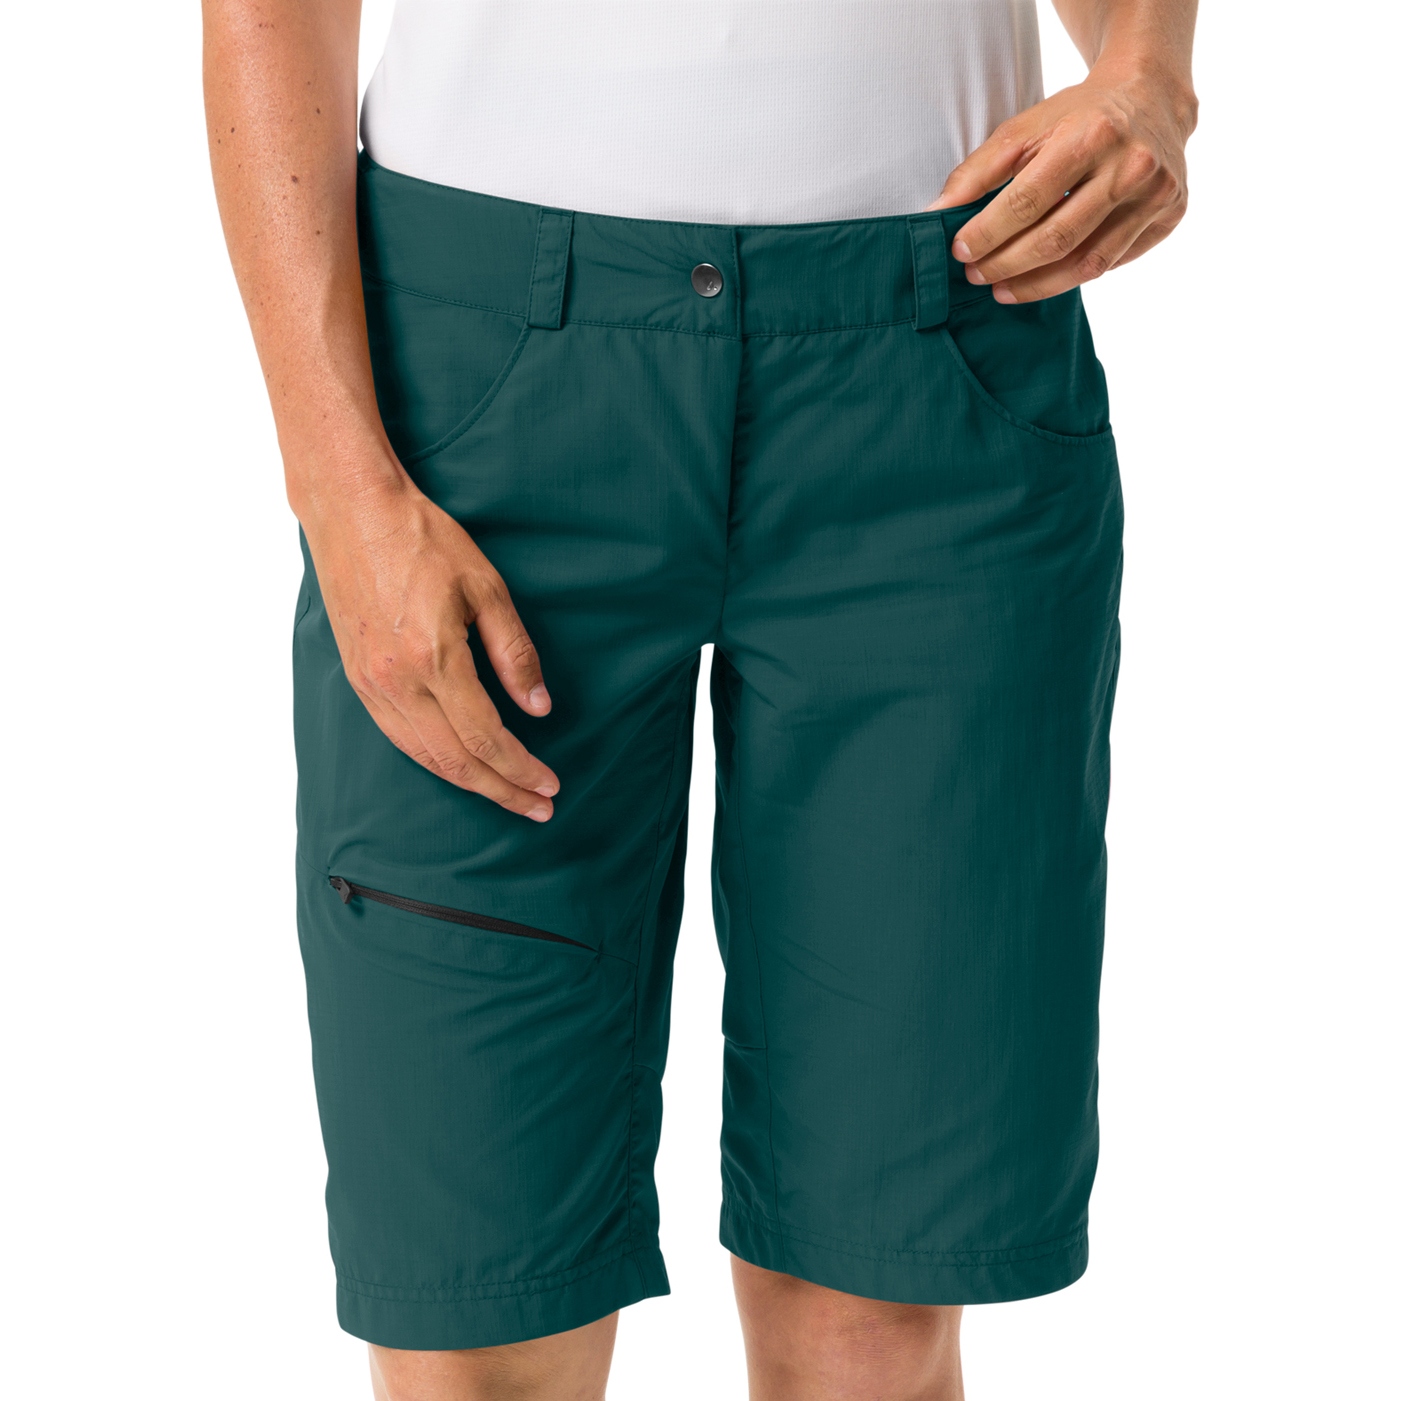 Produktbild von Vaude Tamaro II Shorts Damen - mallard green